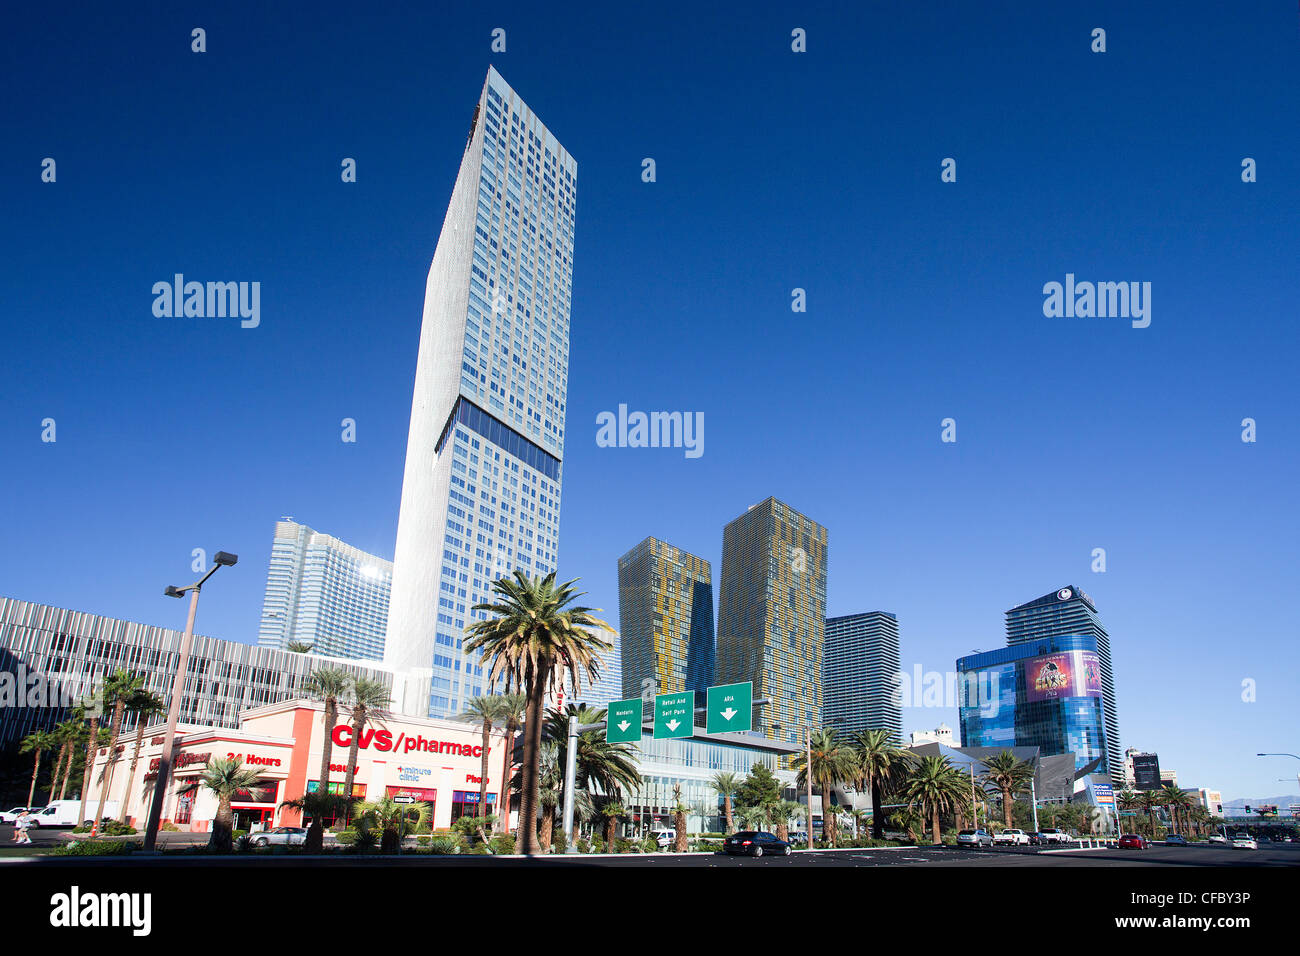 Stati Uniti d'America, Stati Uniti, America, Nevada, Las Vegas, Città, striscia, Avenue, casinò, colorato, famoso, moderno, nuovo skyline, skyscrape Foto Stock